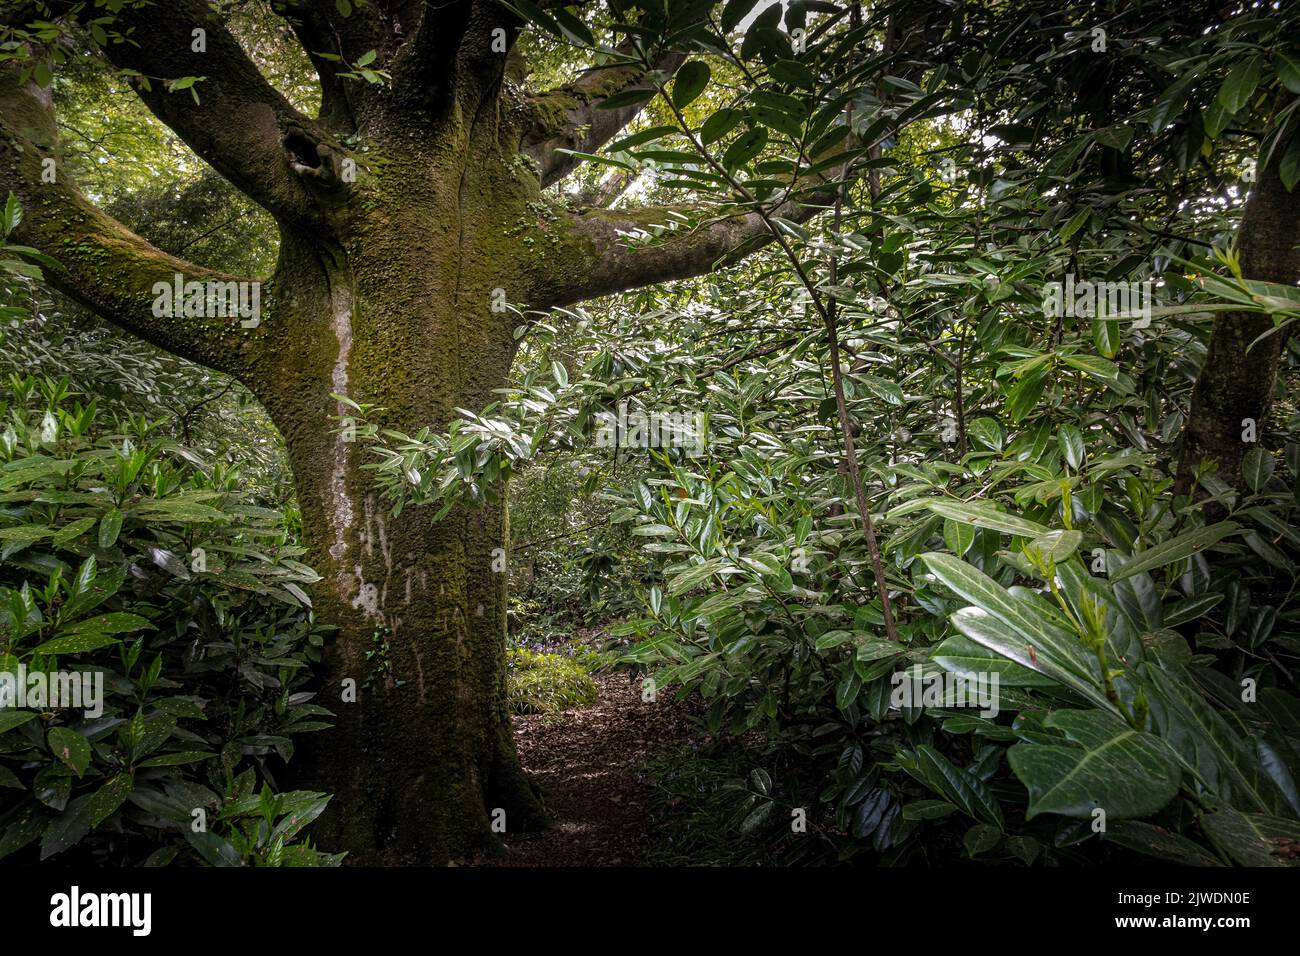 Un arbre couvert de mousse dans le jardin sauvage subtropical Penjjick à Cornwall. Penjerrick Garden est reconnu comme le véritable jardin de la jungle de Cornmurals en Angleterre Banque D'Images